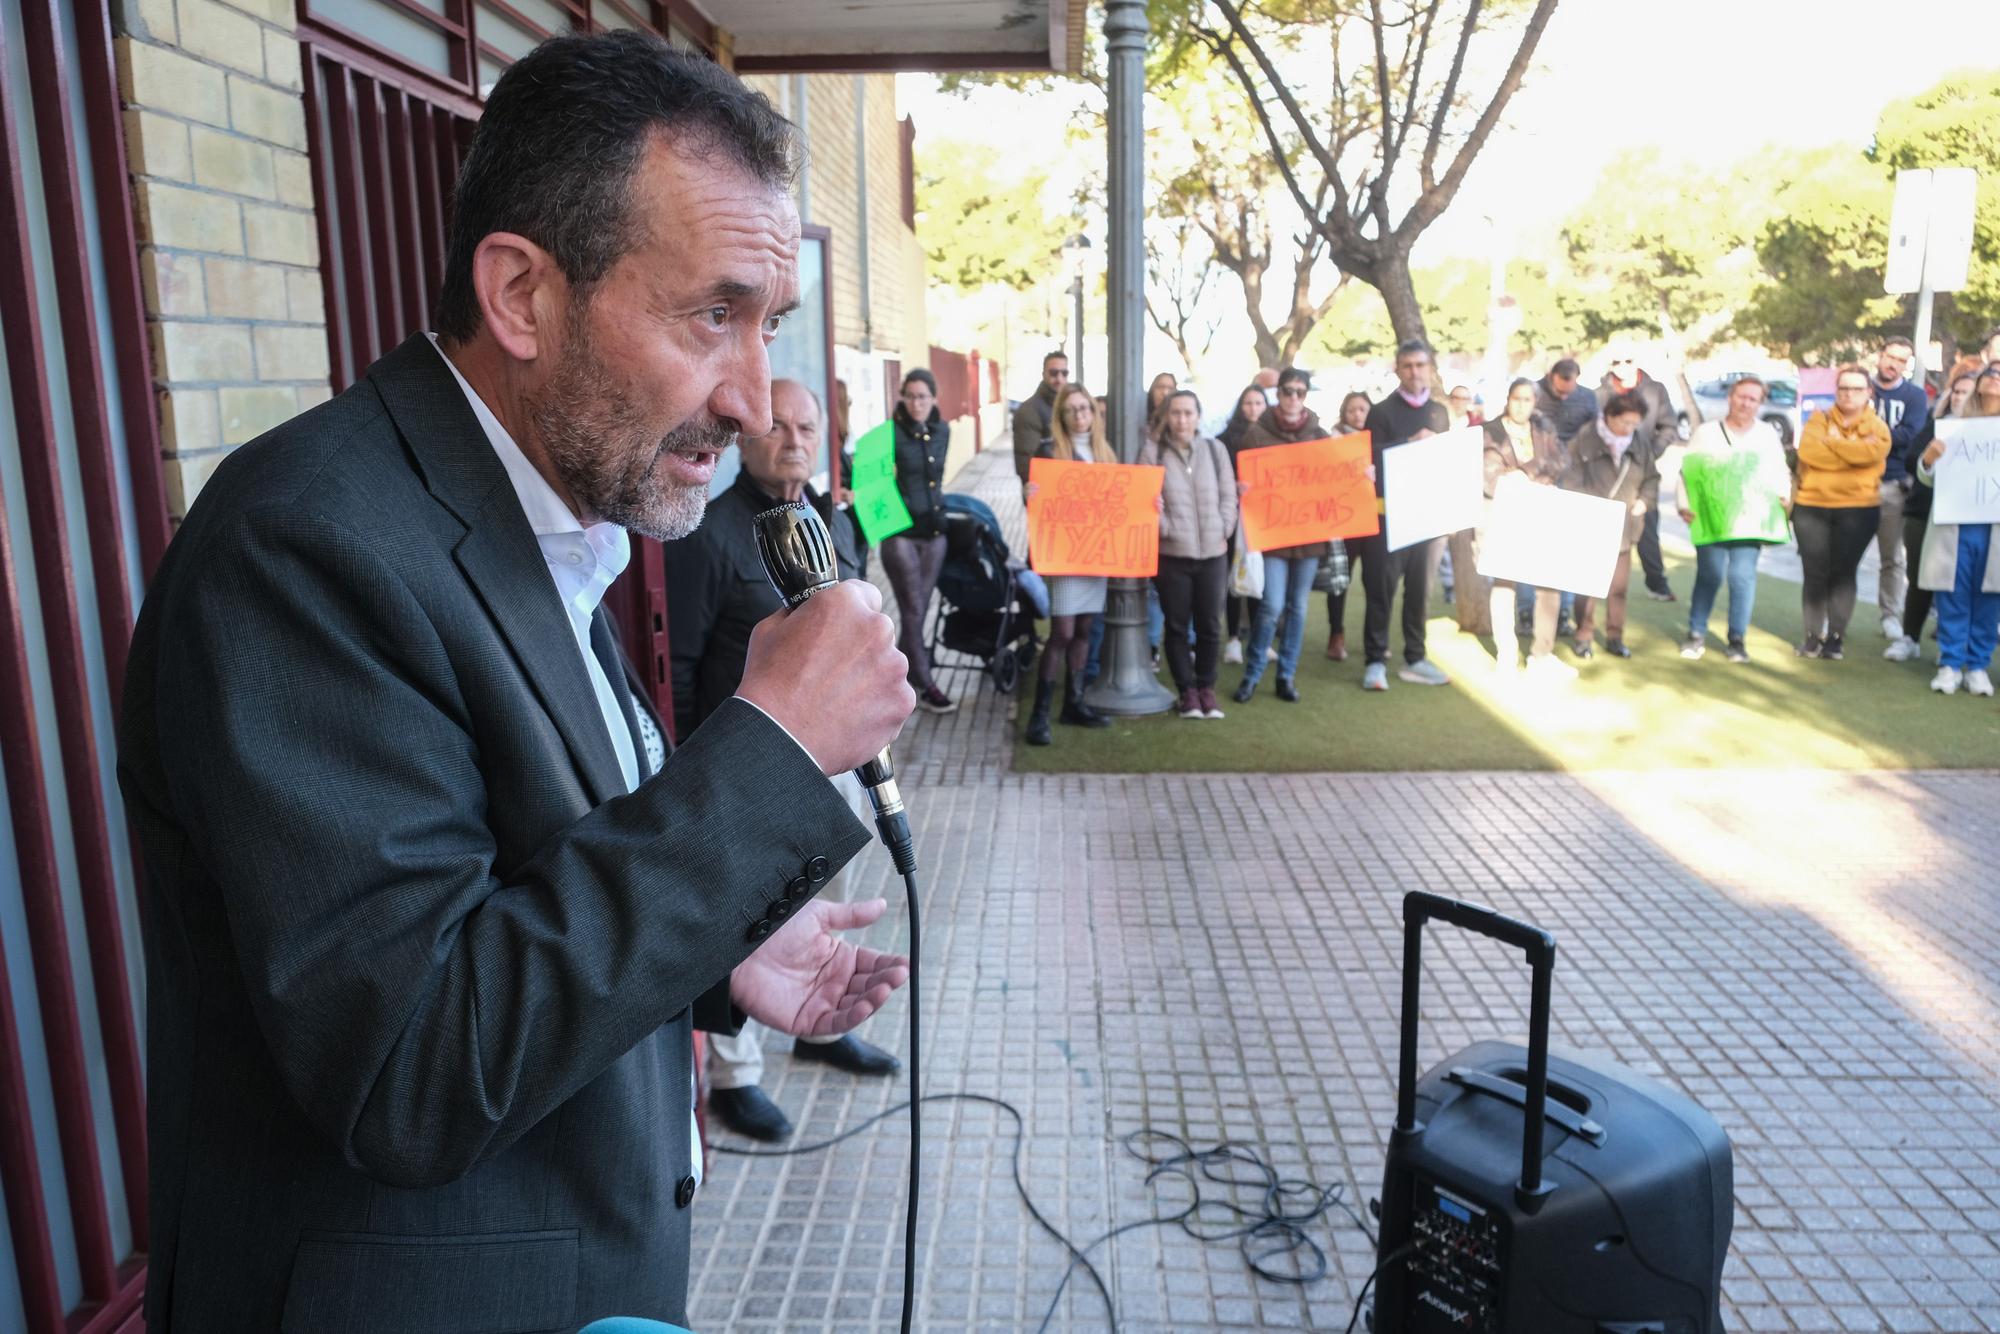 El alcalde de Elche acude a la protesta del colegio de El Altet para llamar a la calma